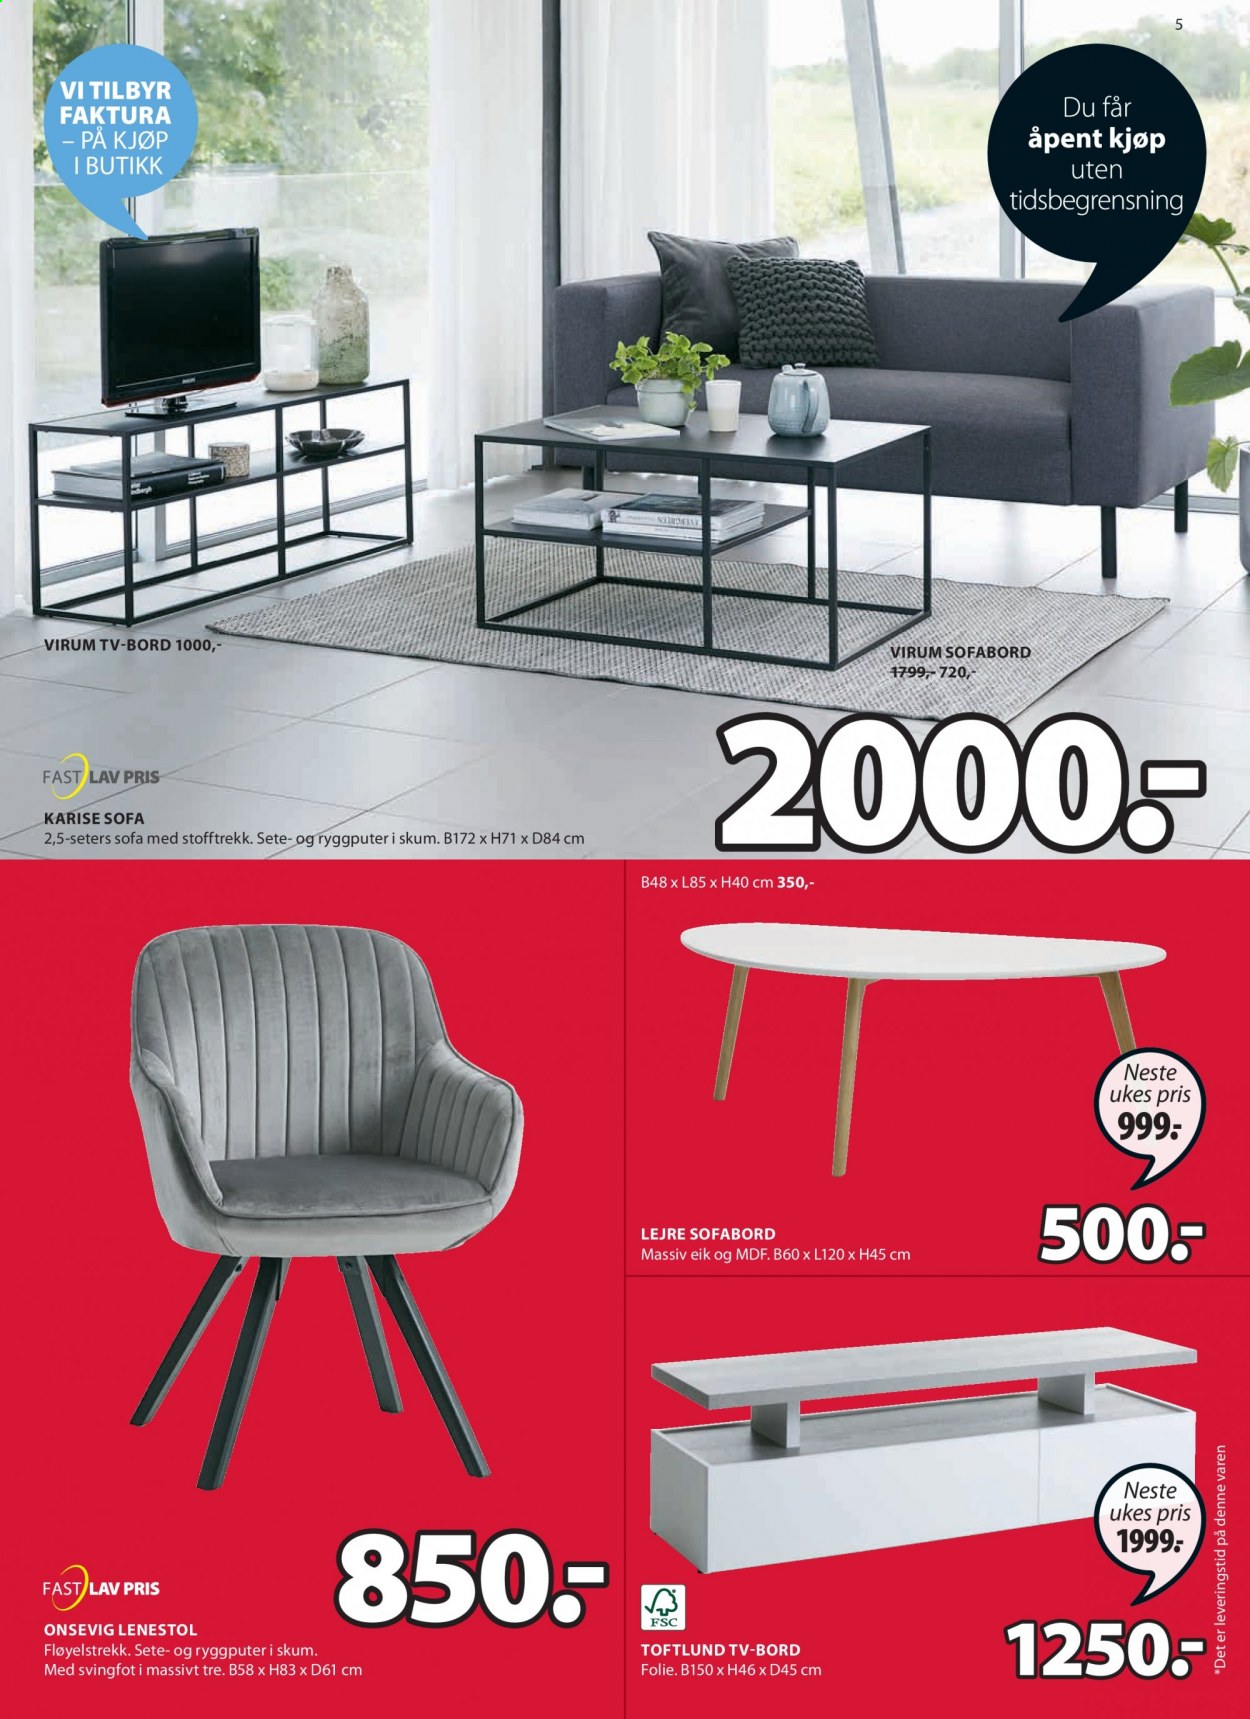 thumbnail - Kundeavis JYSK - 14.6.2021 - 19.6.2021 - Produkter fra tilbudsaviser - bord, stol, lenestol. Side 5.